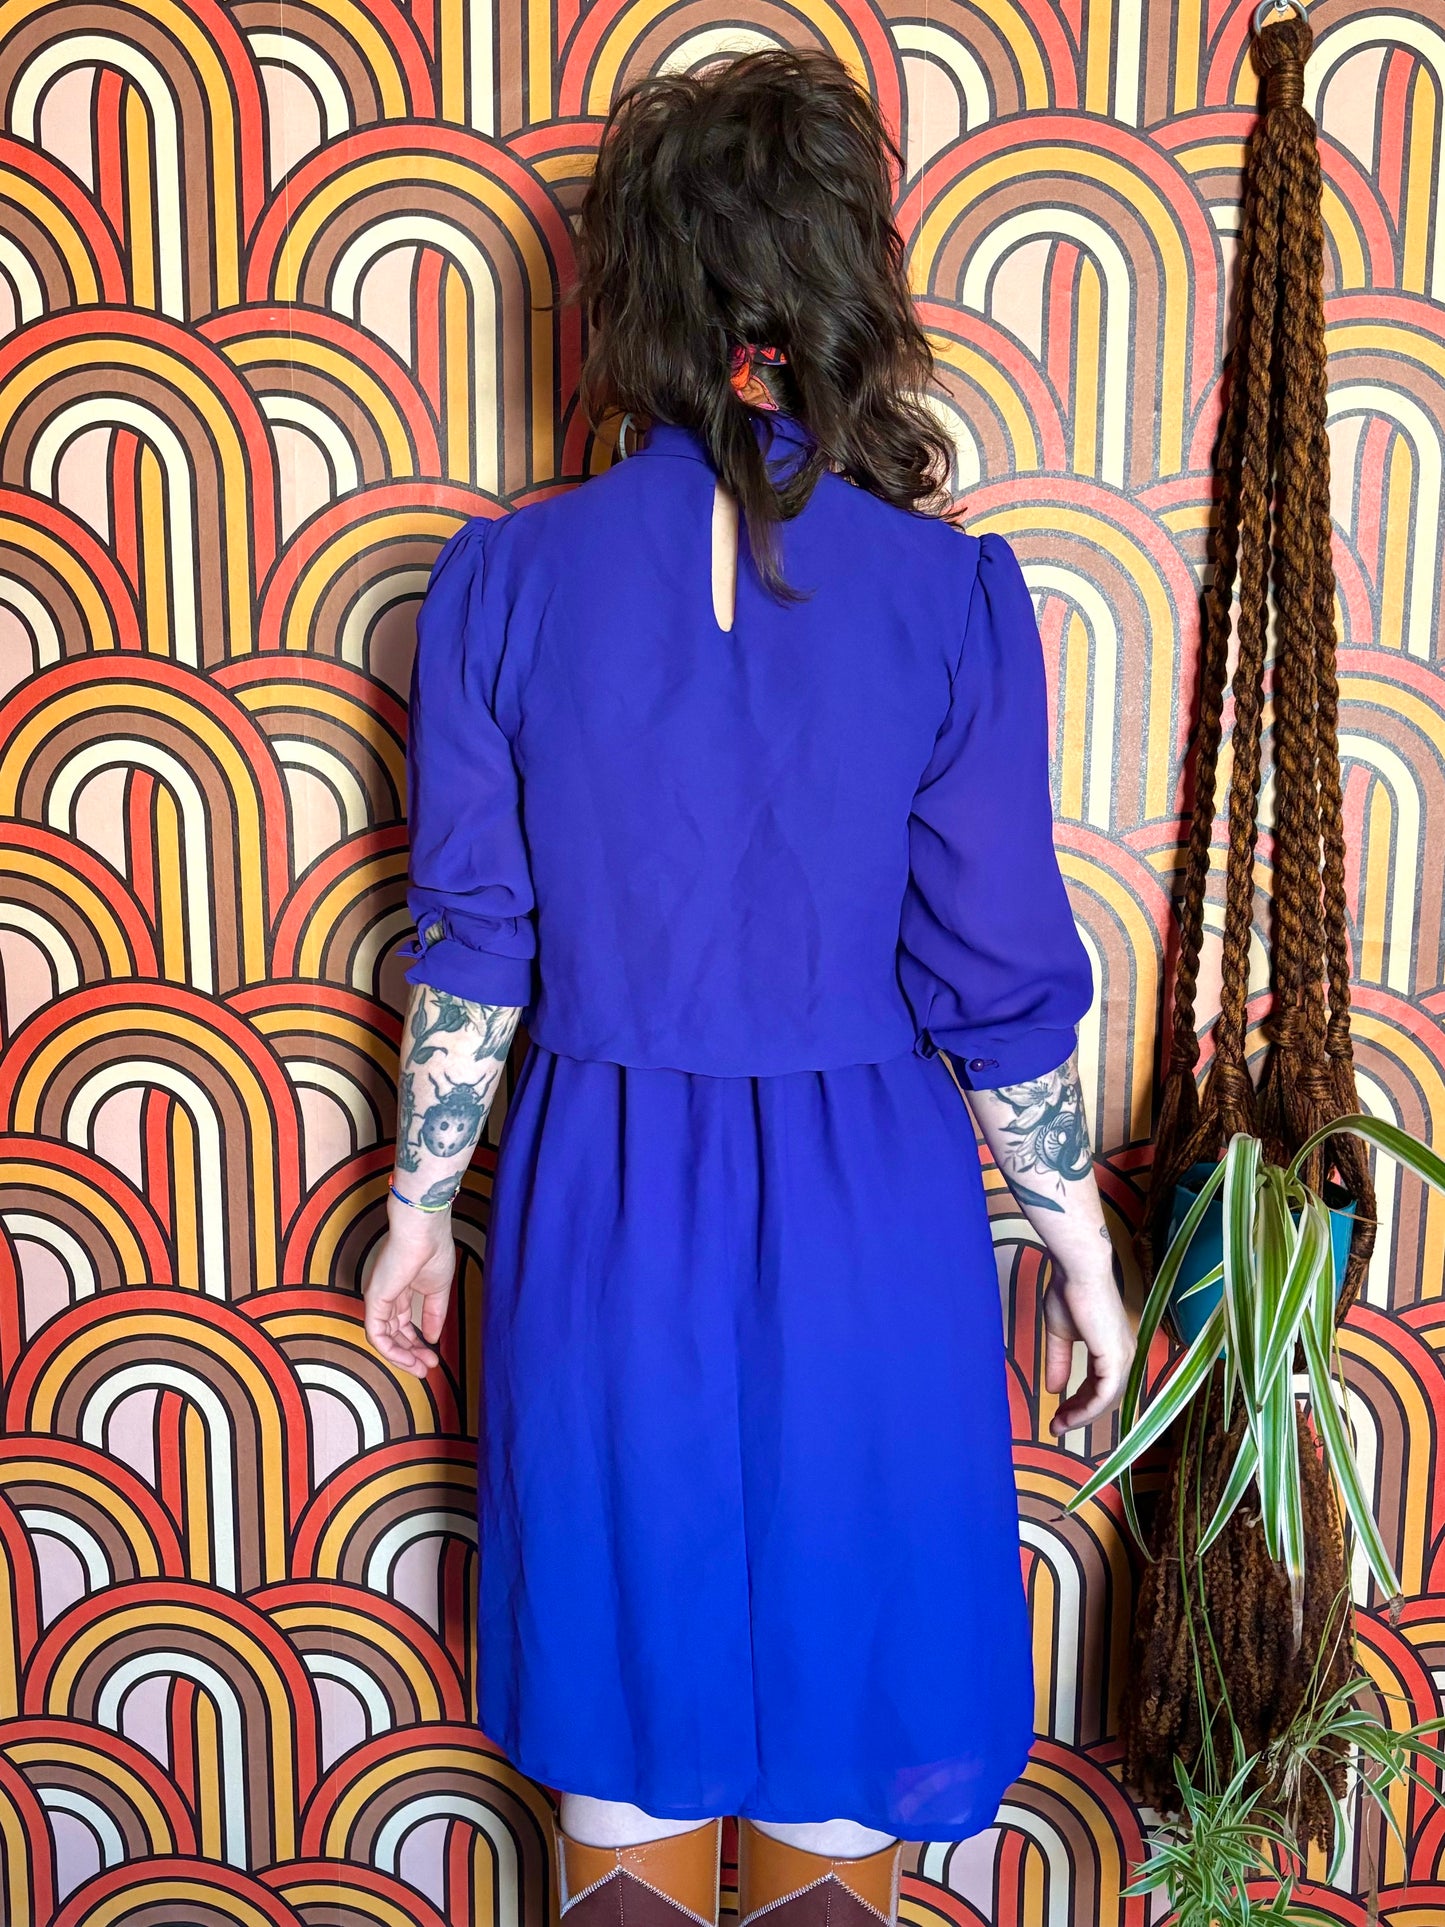 Vintage 80s Purple Midi Dress